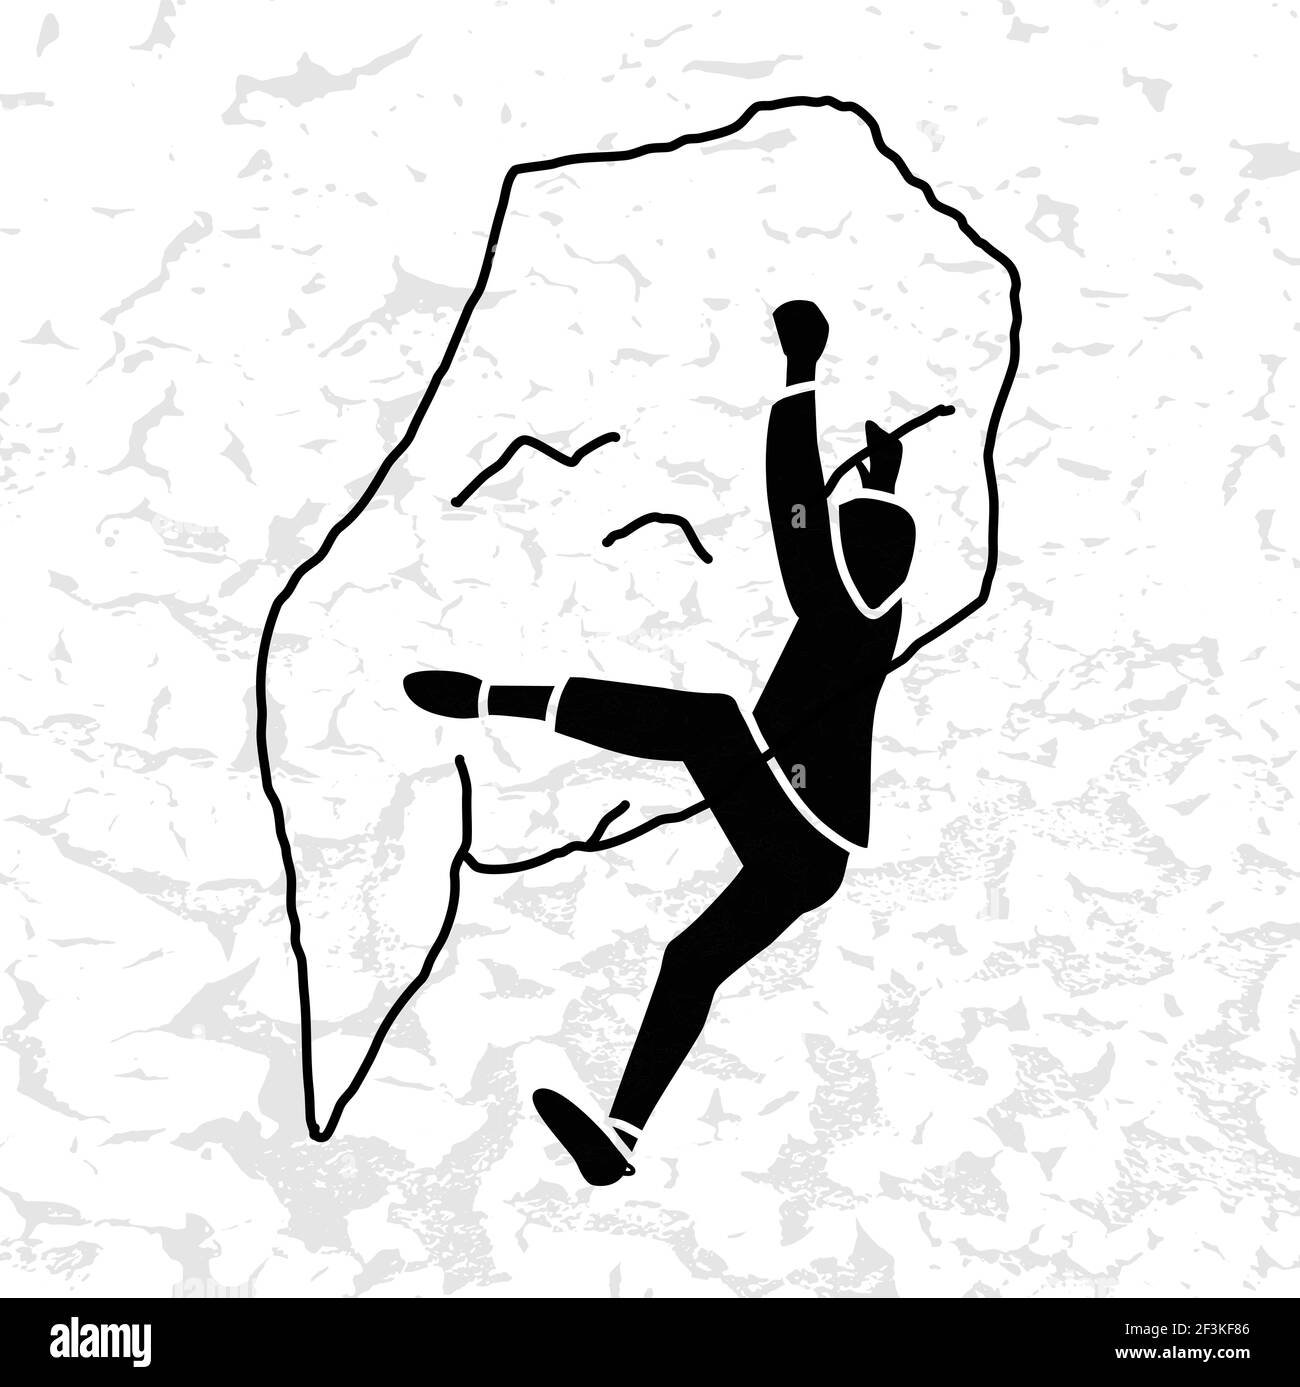 Climber Silhouette eine Felsvektor Illustration. Kletterschild. Männer, die Extremsport, Adrenalin-Aktivität der starken Männer. Kletterer ohne R Stock Vektor